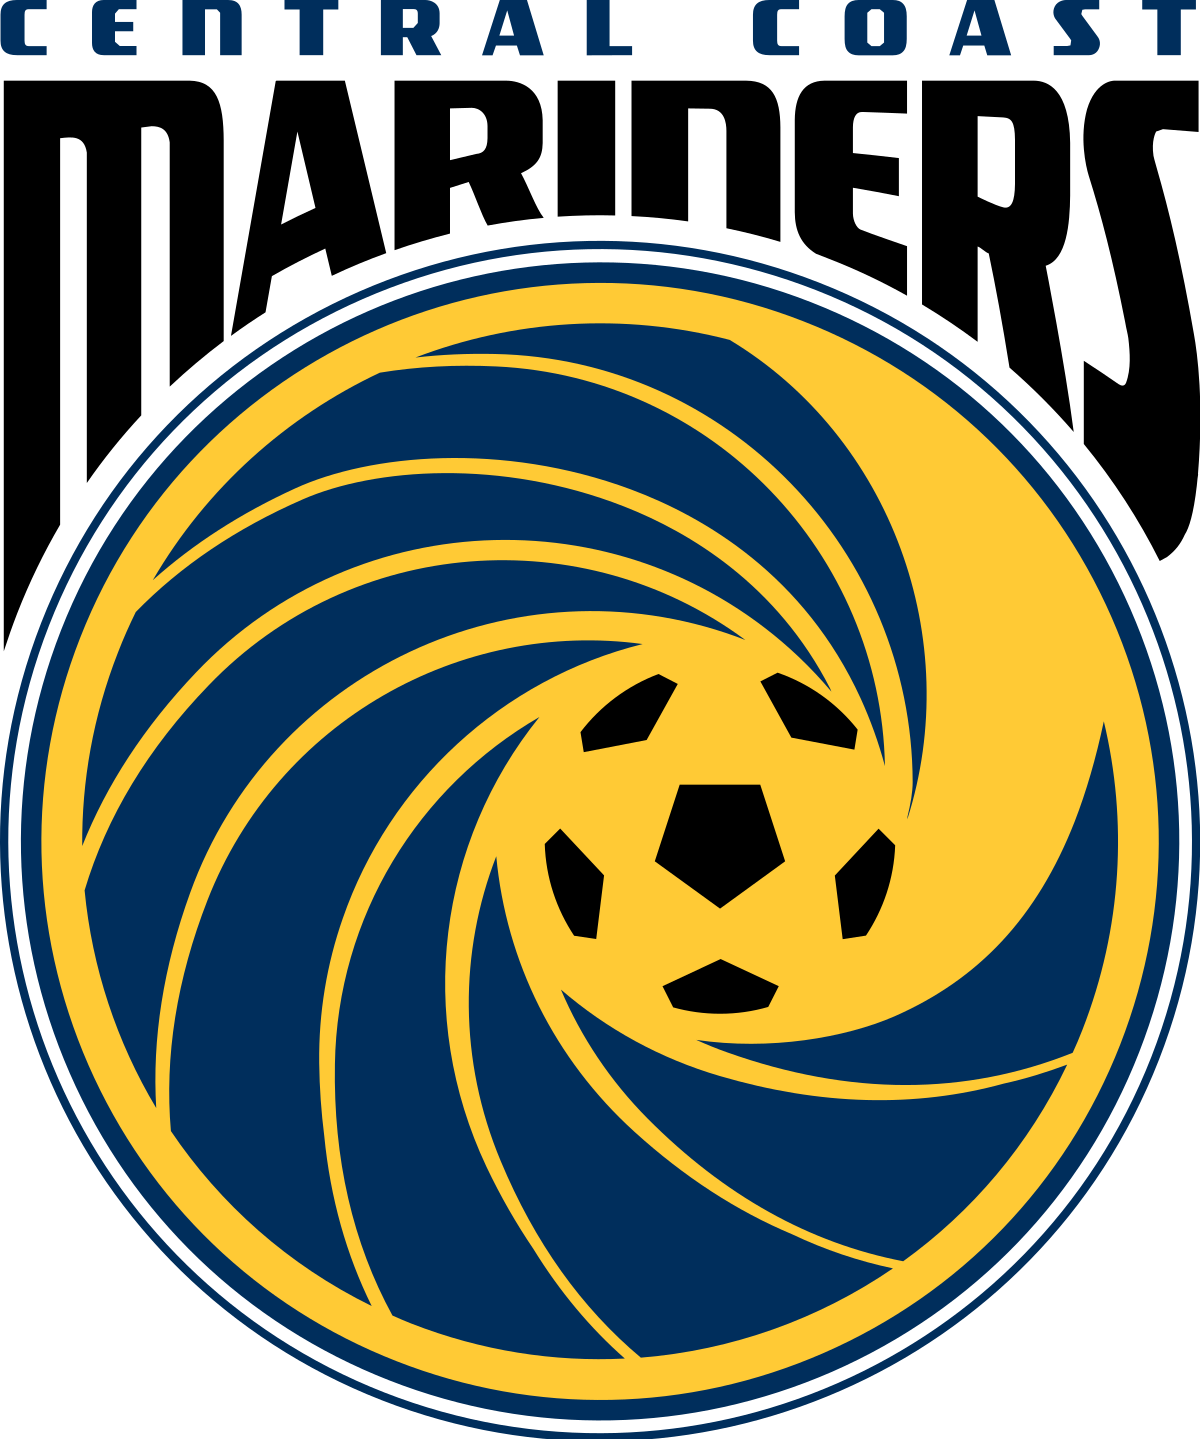 Central Coast Mariners-2 logo